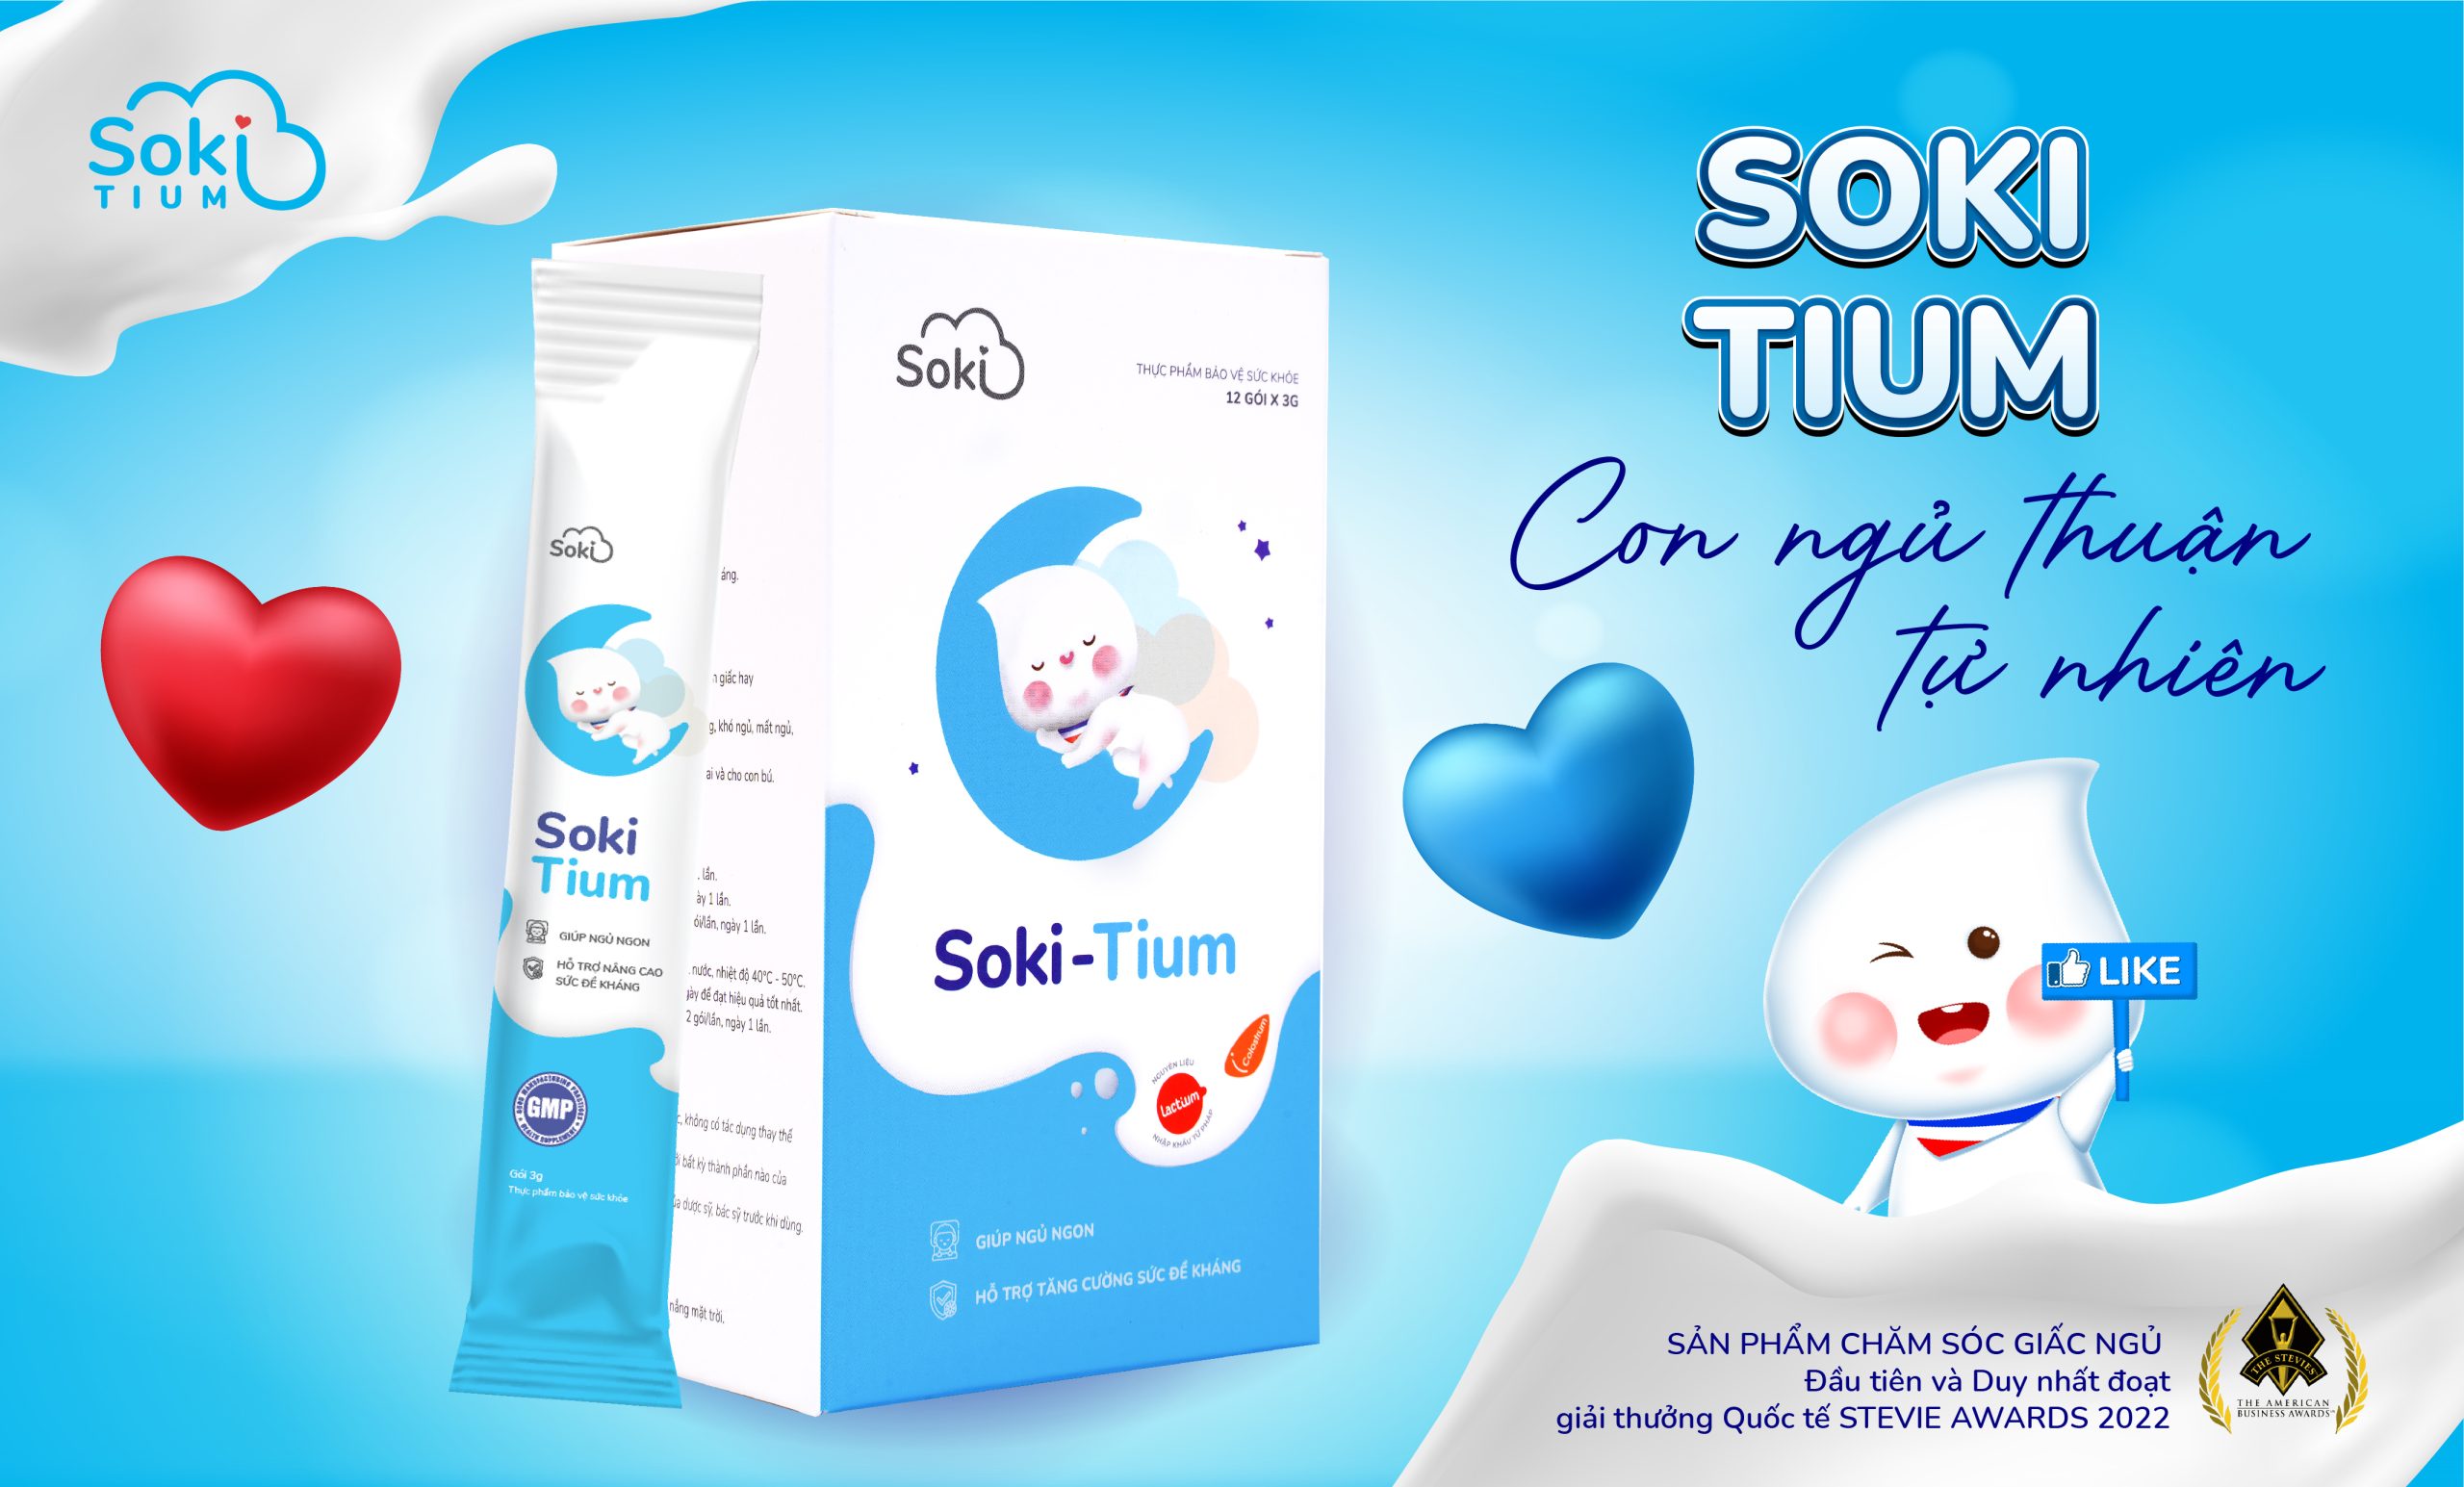 Soki Tium hoạt động dựa trên cơ chế dưỡng thư - Giúp bé thư giãn, ngủ ngon giảm quấy khóc do Hội chứng colic